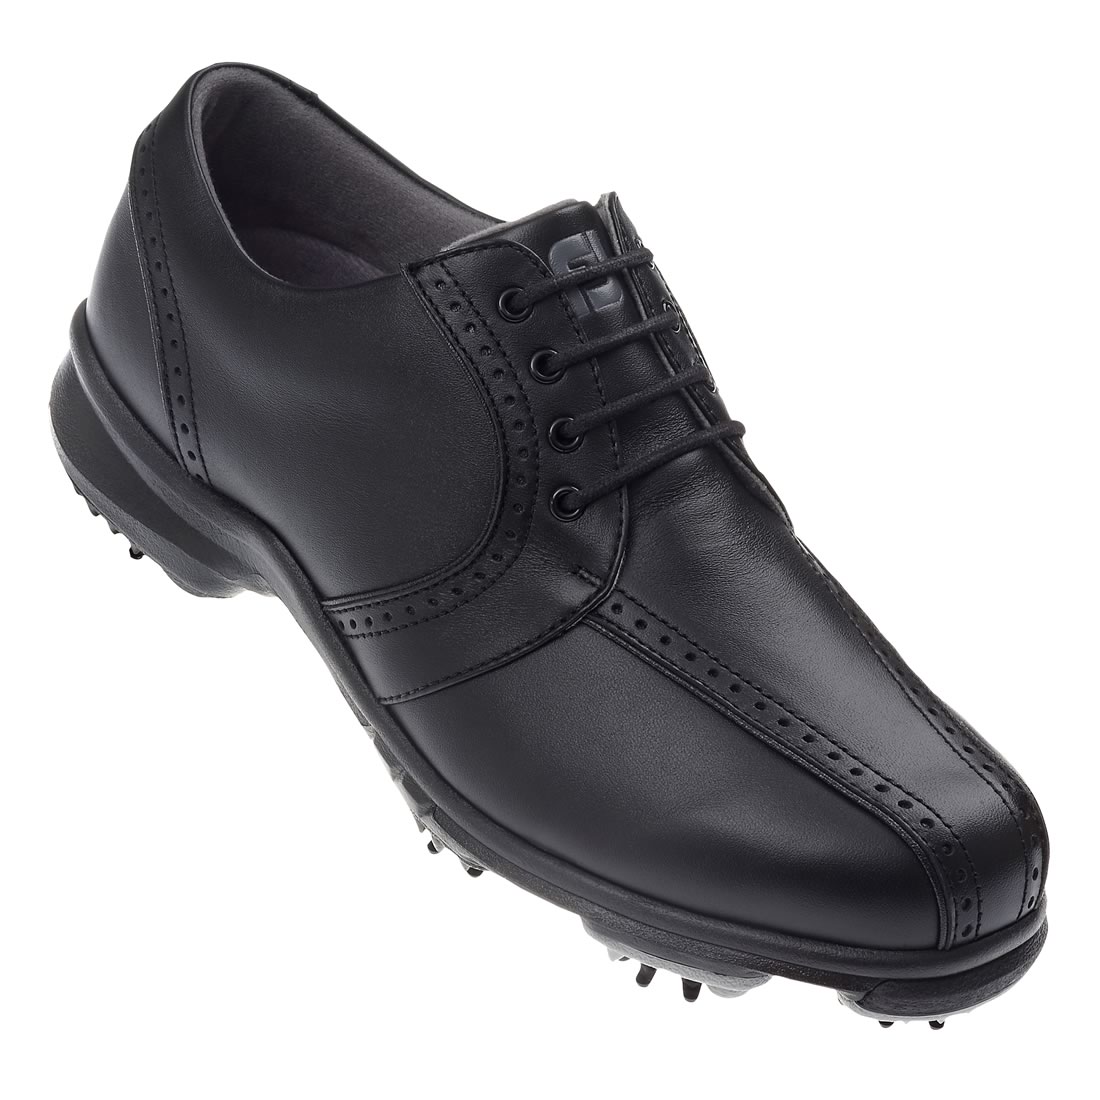 Ladies Softjoys Golf Shoes Black #98422